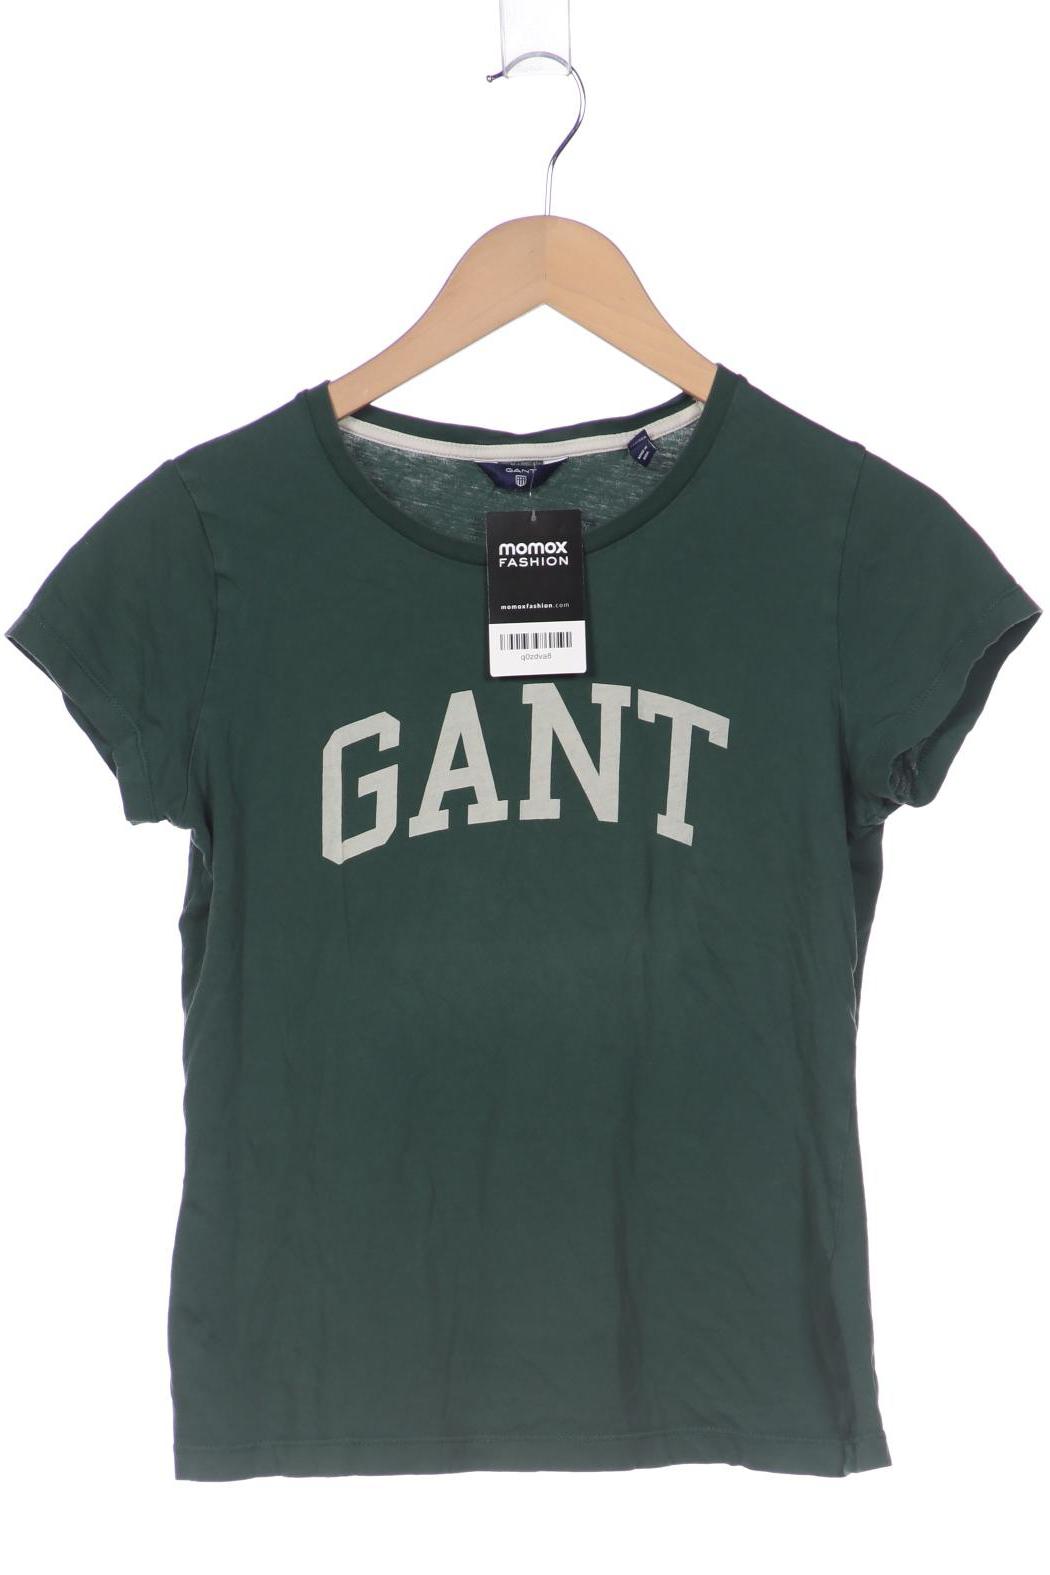 Gant Damen T-Shirt, grün, Gr. 36 von Gant